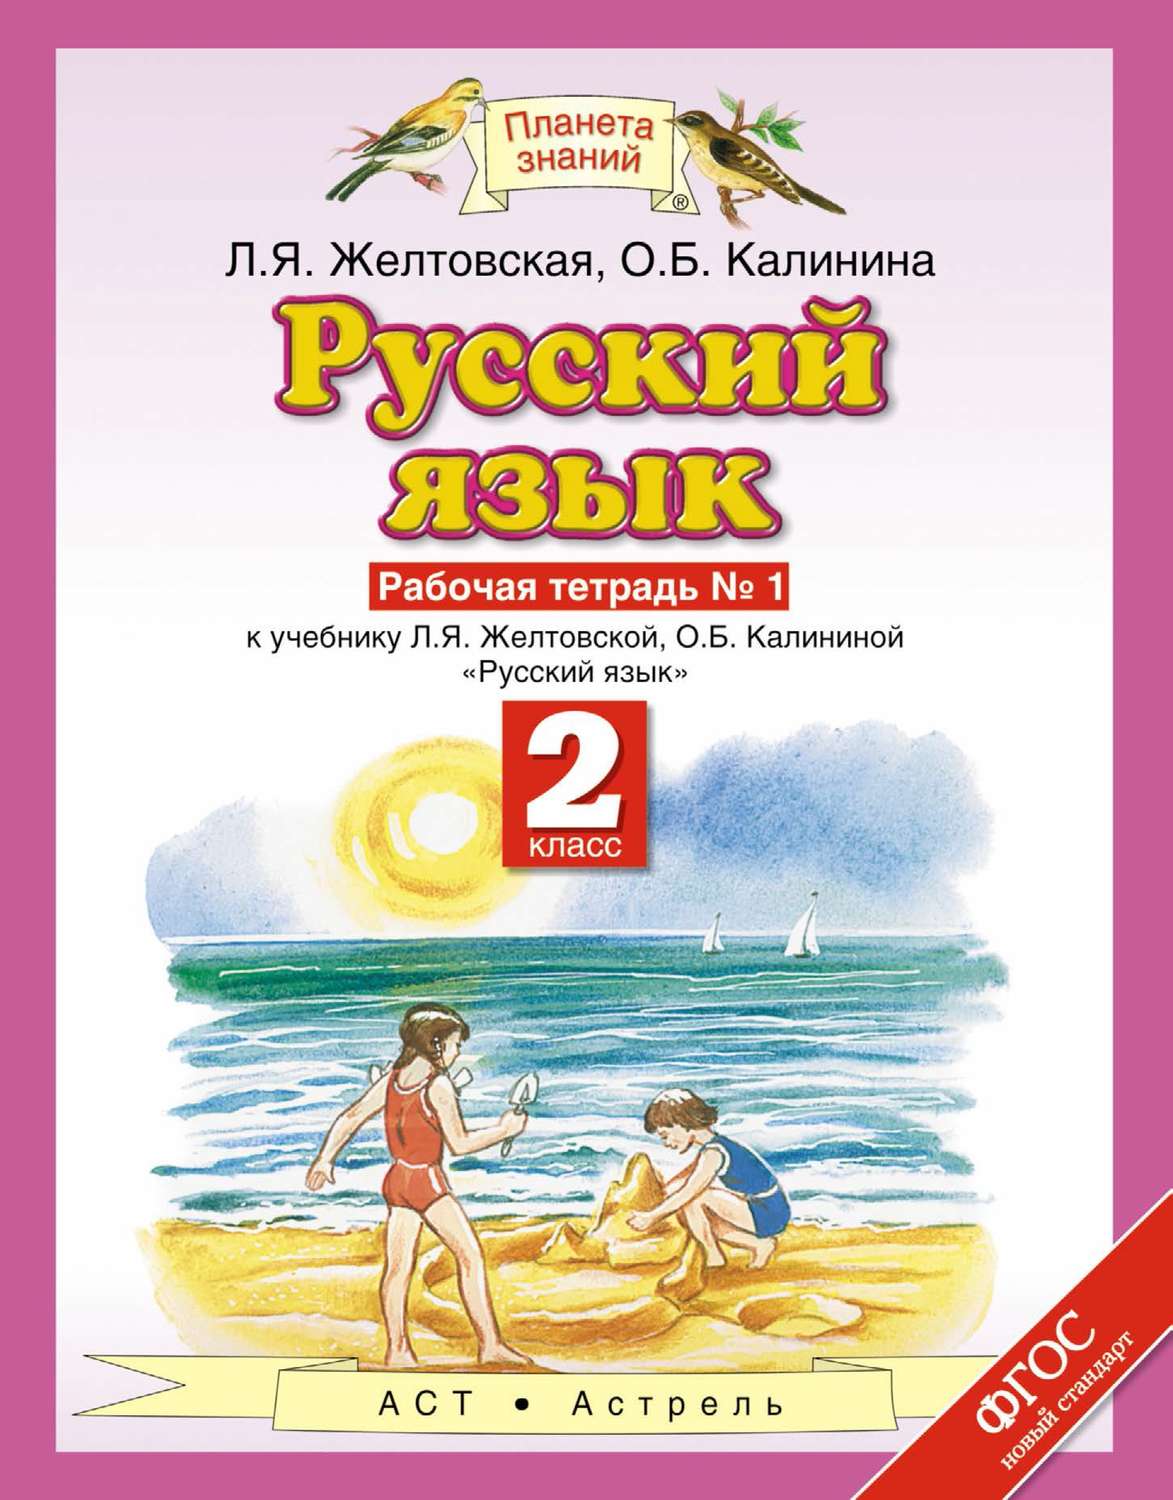 Учебник русский 3 класс желтовская скачать бесплатно